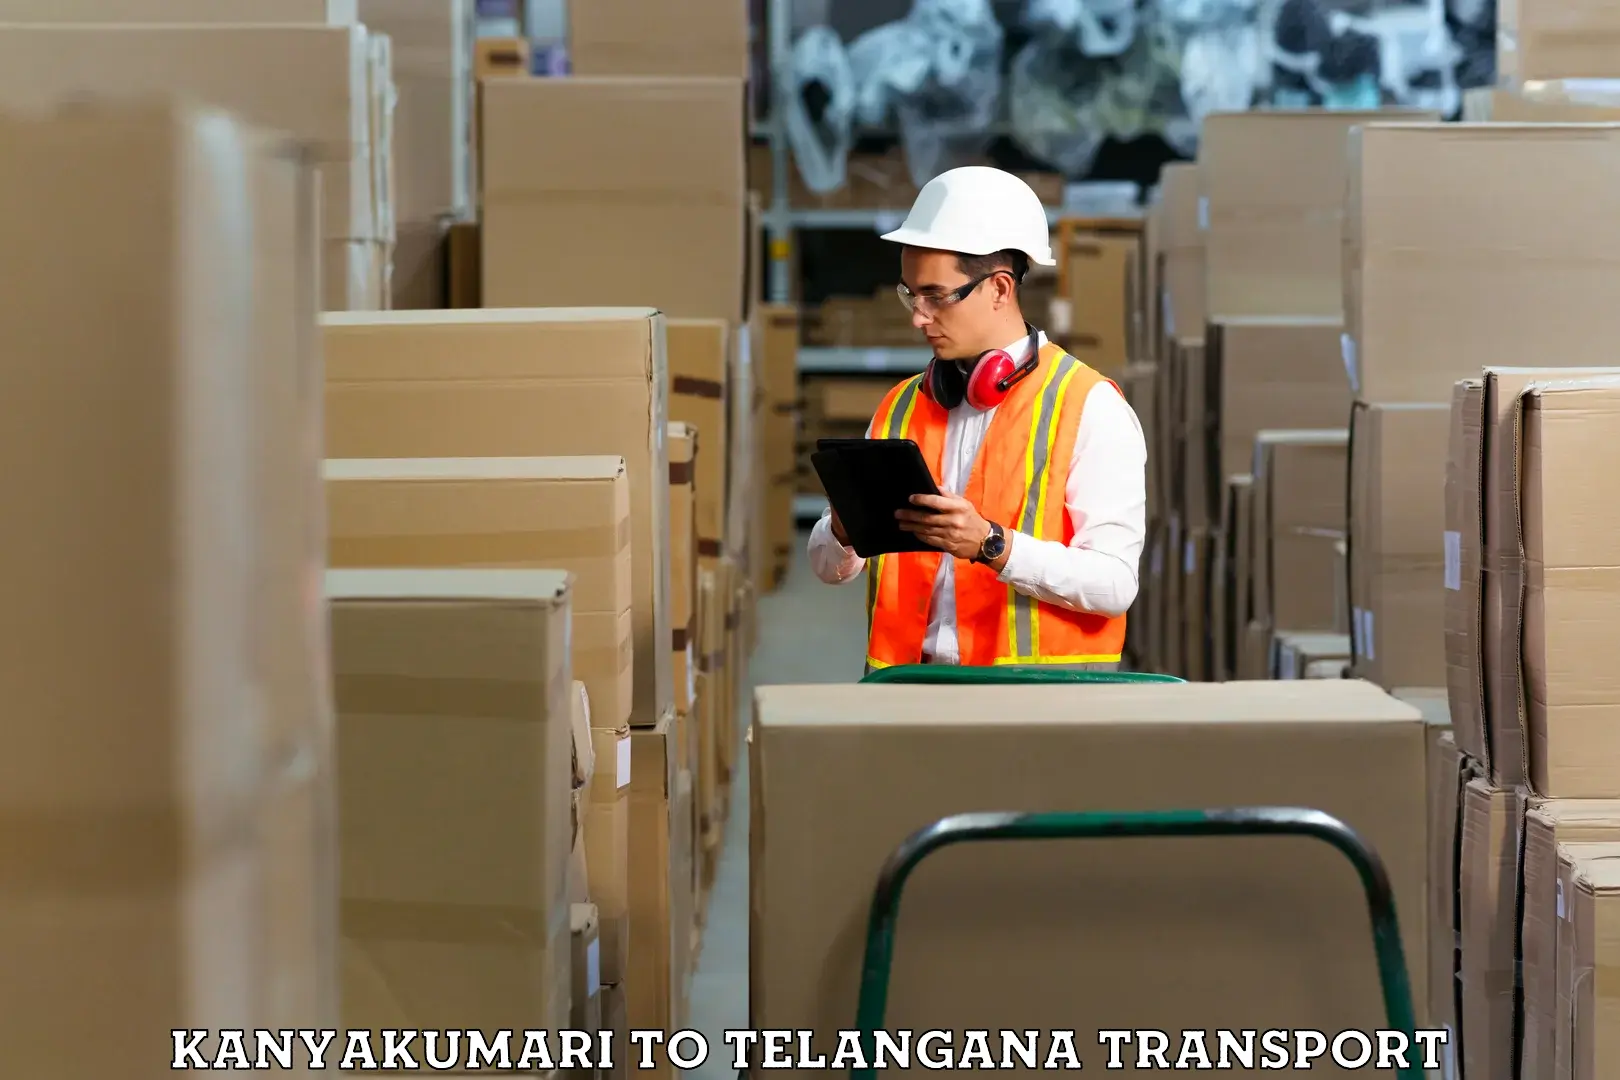 Air freight transport services Kanyakumari to Wyra